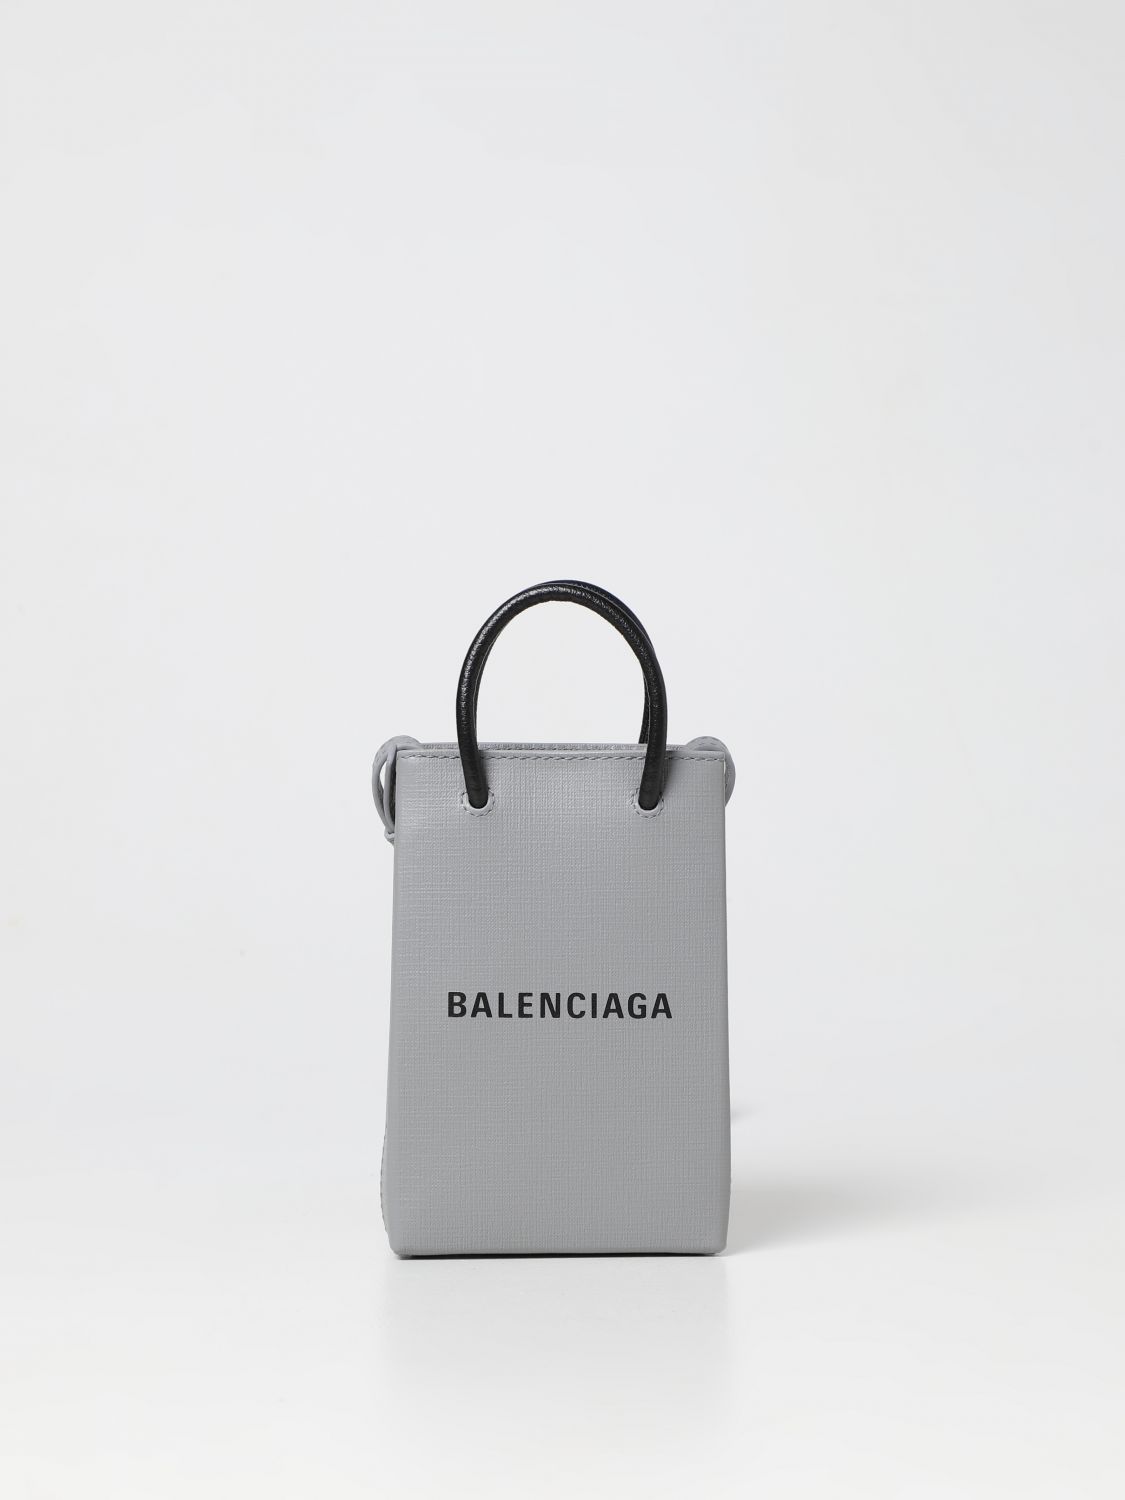 Balenciaga Metallic Edge City Tote Bag Mini Gray in Lambskin Leather  US